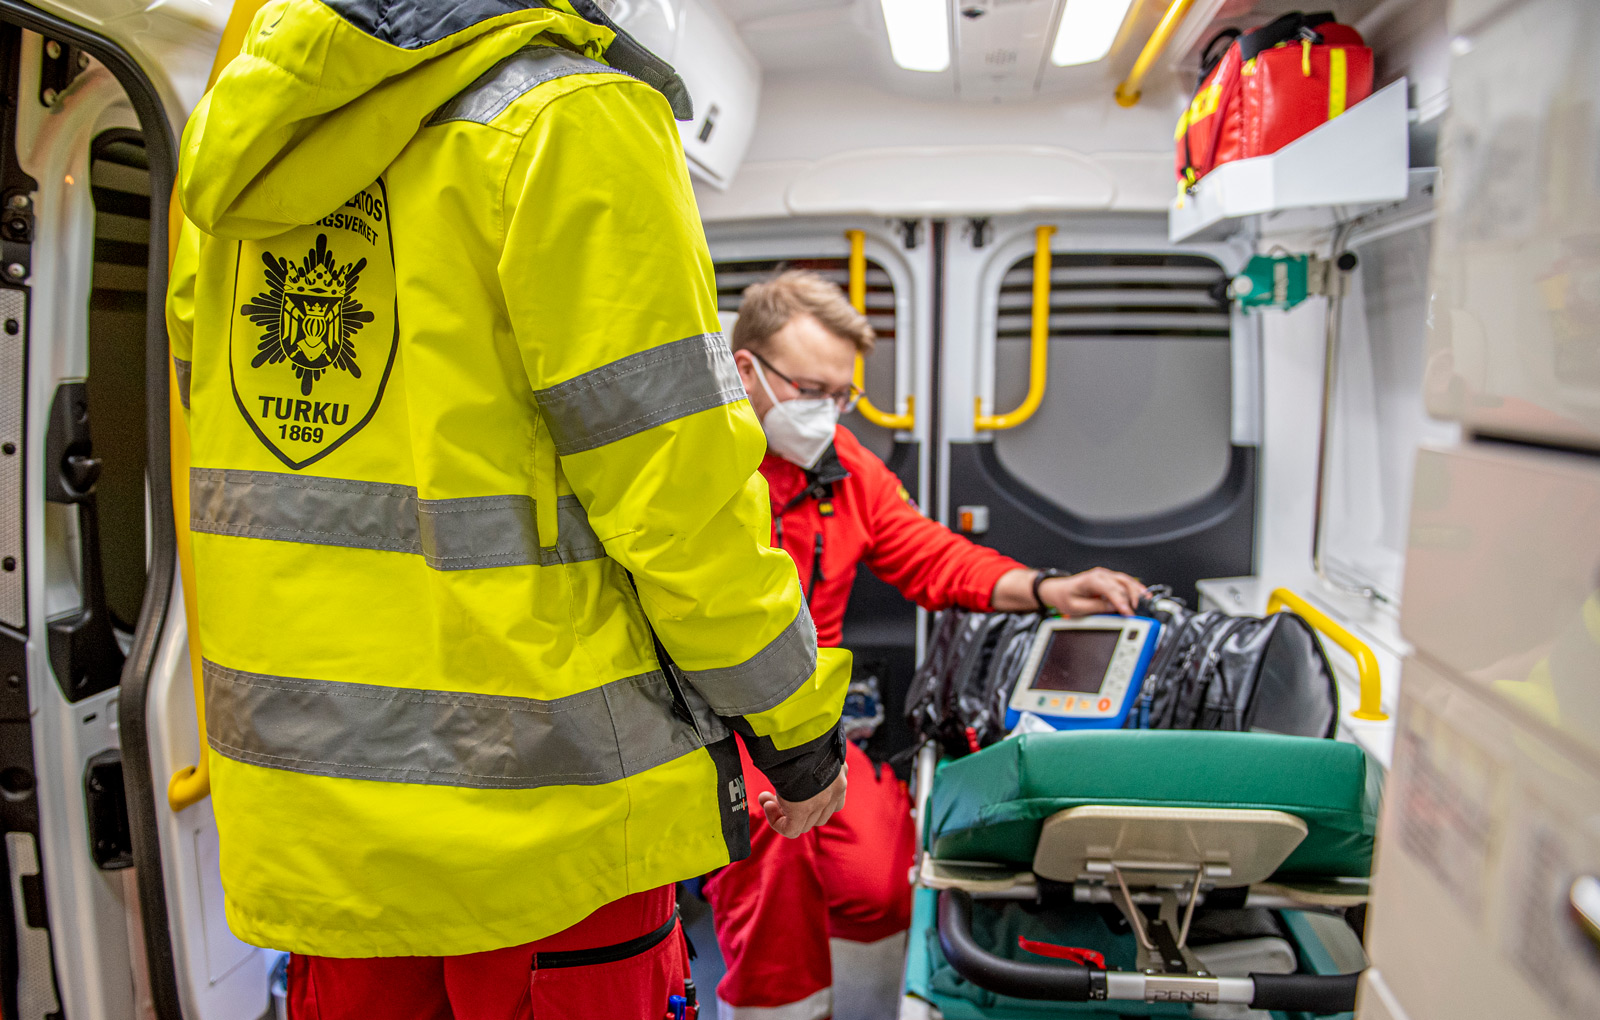 Pilottihankkeen koulutusambulanssi ei eroa normaalista hoitotason ambulanssista. Tarkoitus on tarjota yksilöllisiä oppimismalleja, kehittää osaamisen johtamista ja madaltaa kynnystä työelämään. Samalla halutaan varmistaa, että osaavia ensihoitajia riittää jatkossakin.